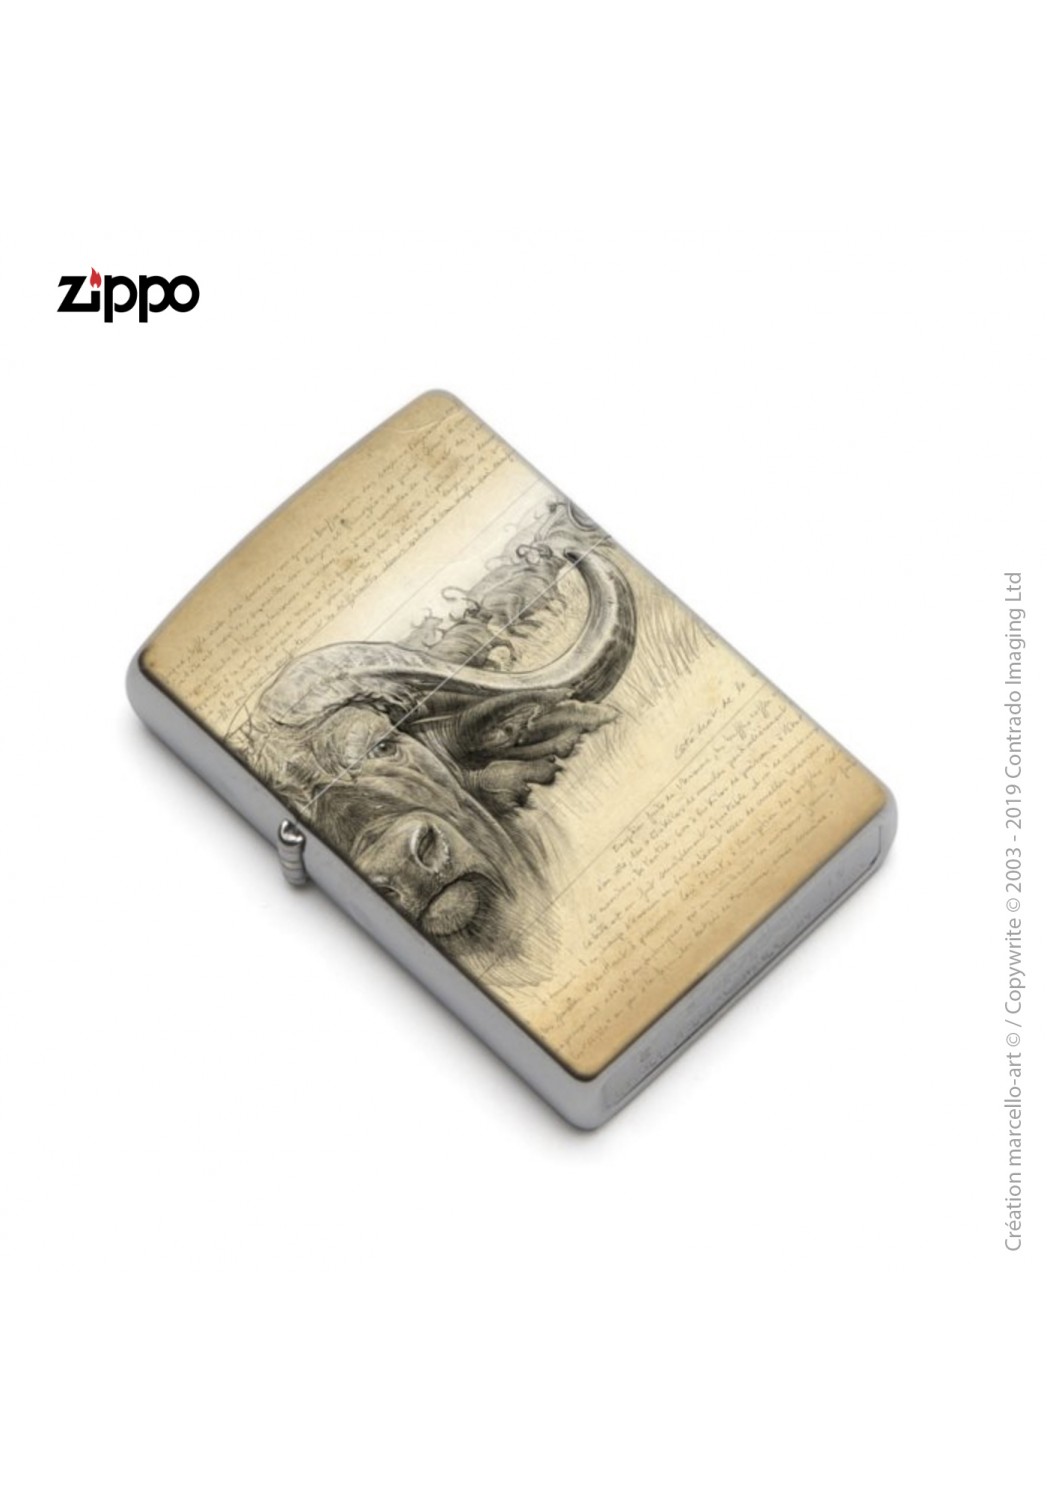 Marcello-art : Accessoires de décoration Zippo 274 buffle gravure Blaser